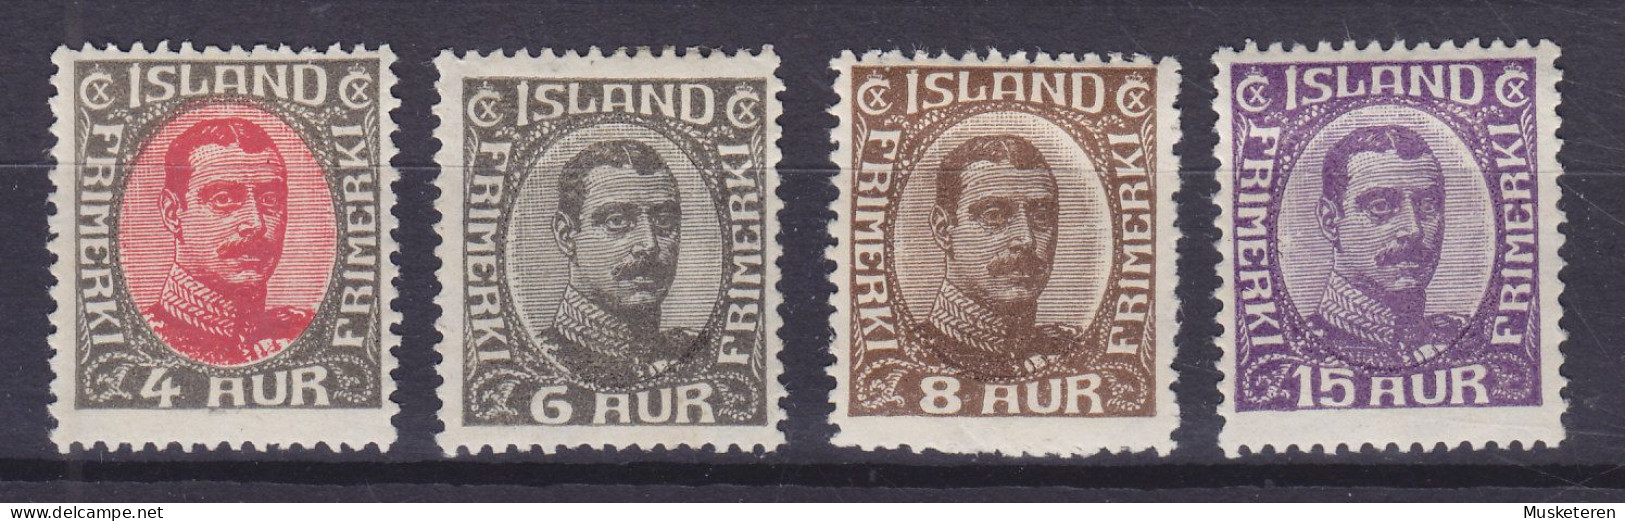 Iceland 1920 Mi. 85, 87-88, 90, 4 Aur, 6 Aur, 8 Aur, 15 Aur Christian X., MH* (2 Scans) - Ongebruikt